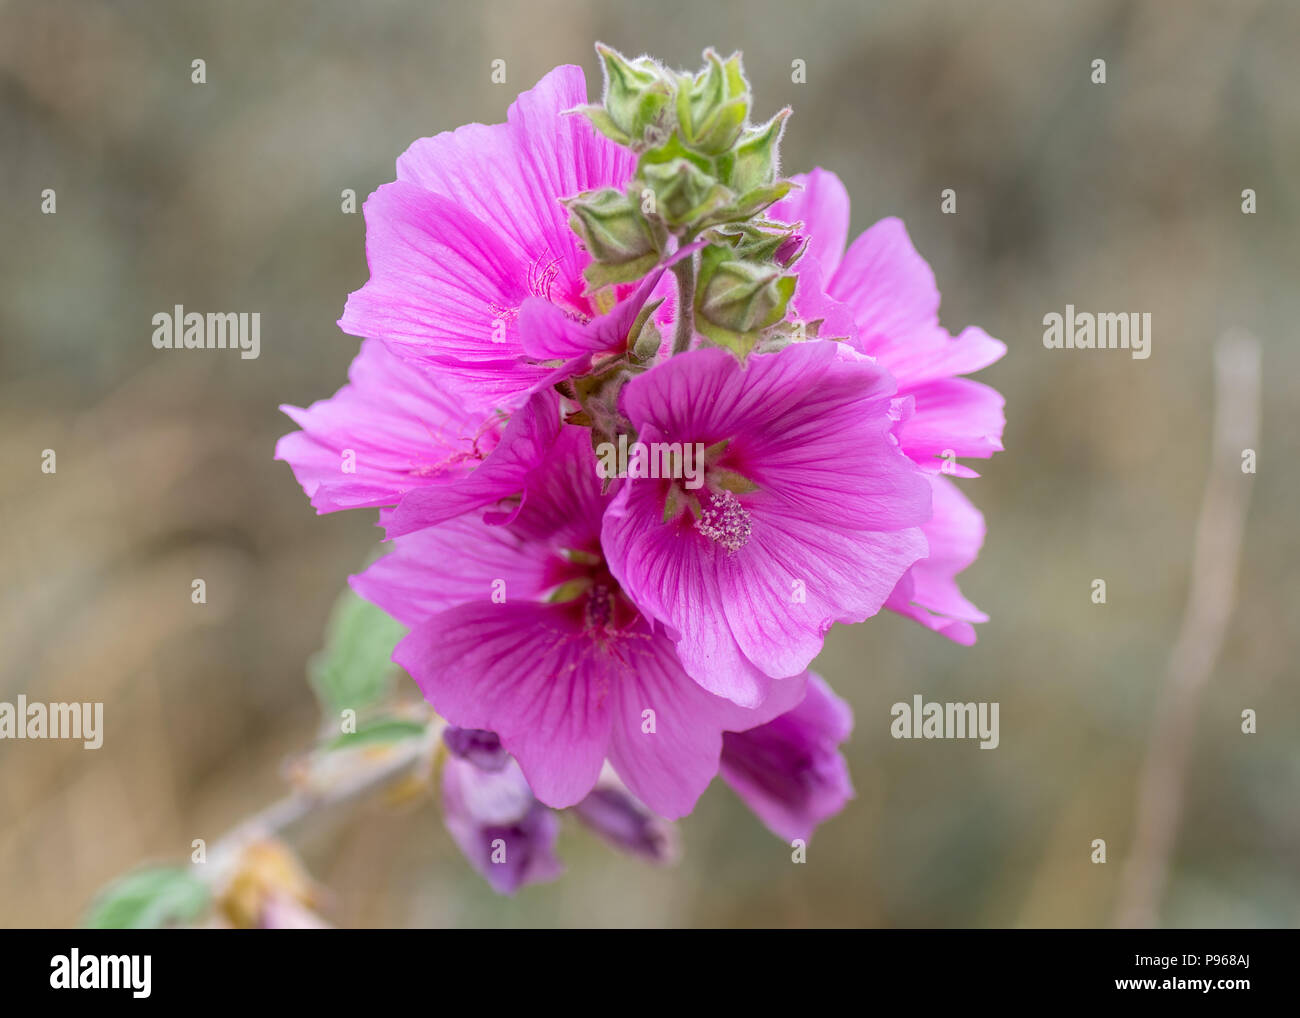 Malve (Alcea rosea) Blumen. Rosa Pflanze in der Mallow Familie (Malvaceae) Übersicht detail von Staubblättern Stockfoto